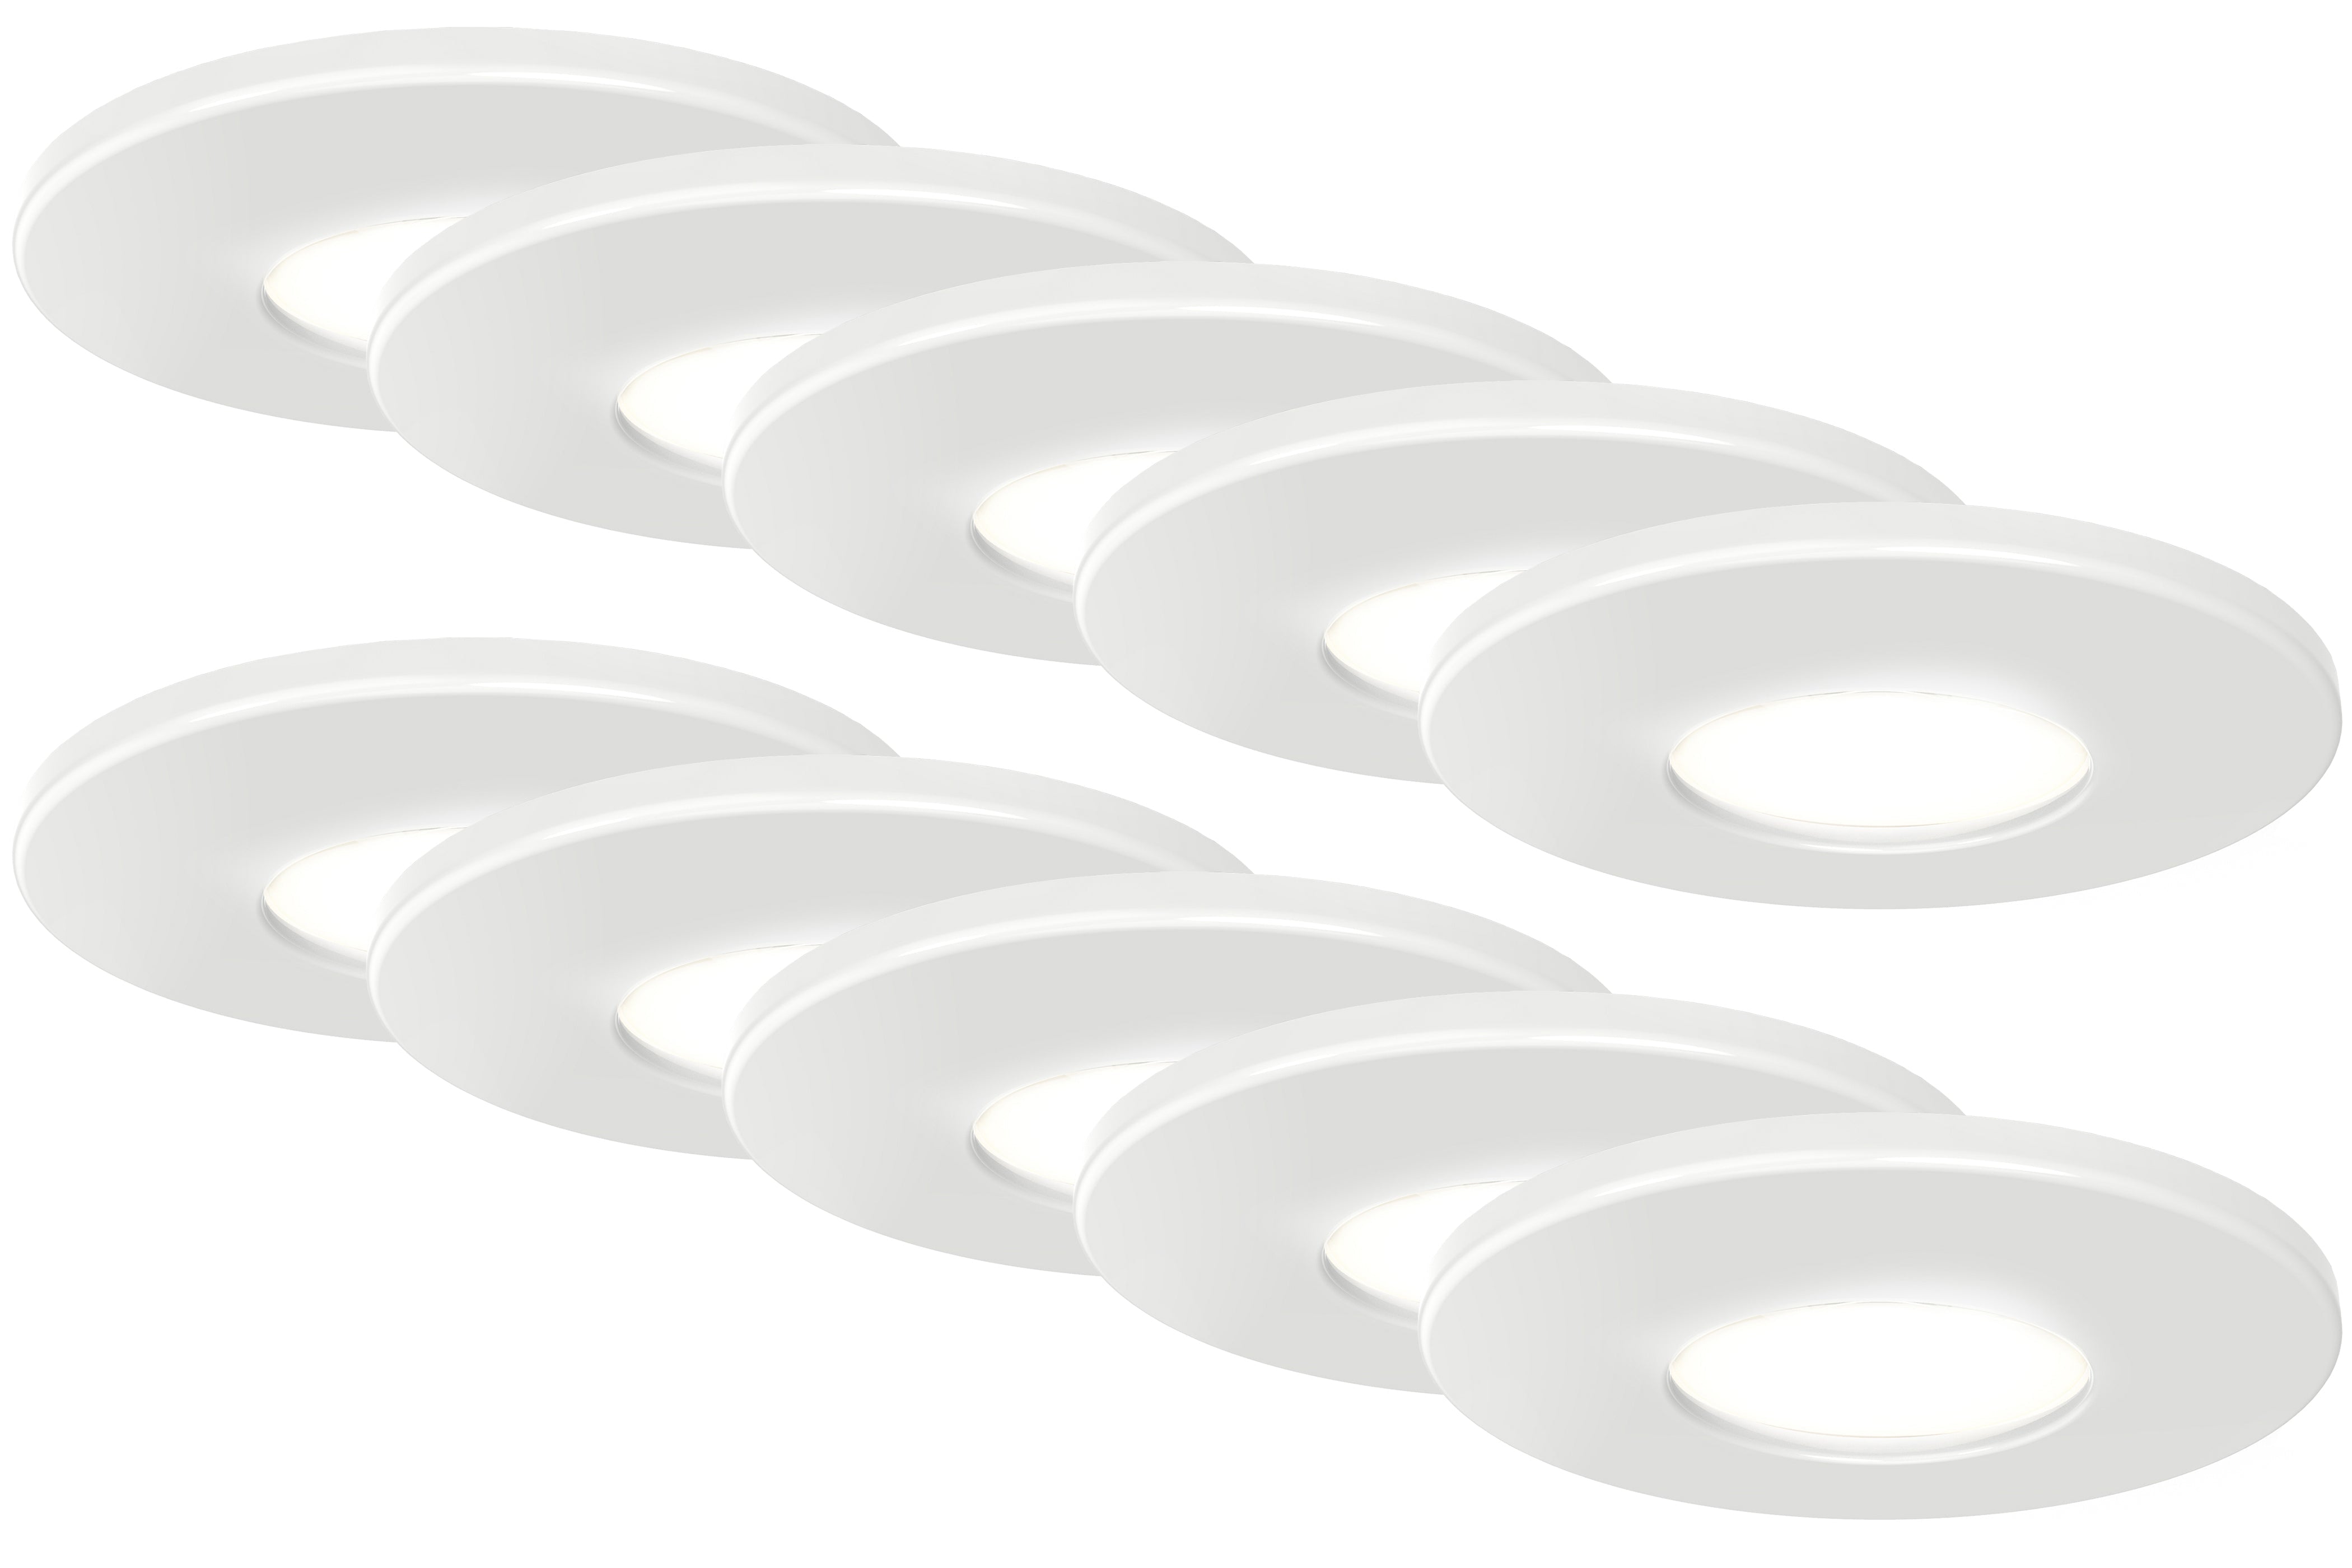 4lite IP65 3000K LED Downlight - White (Pack of 10)